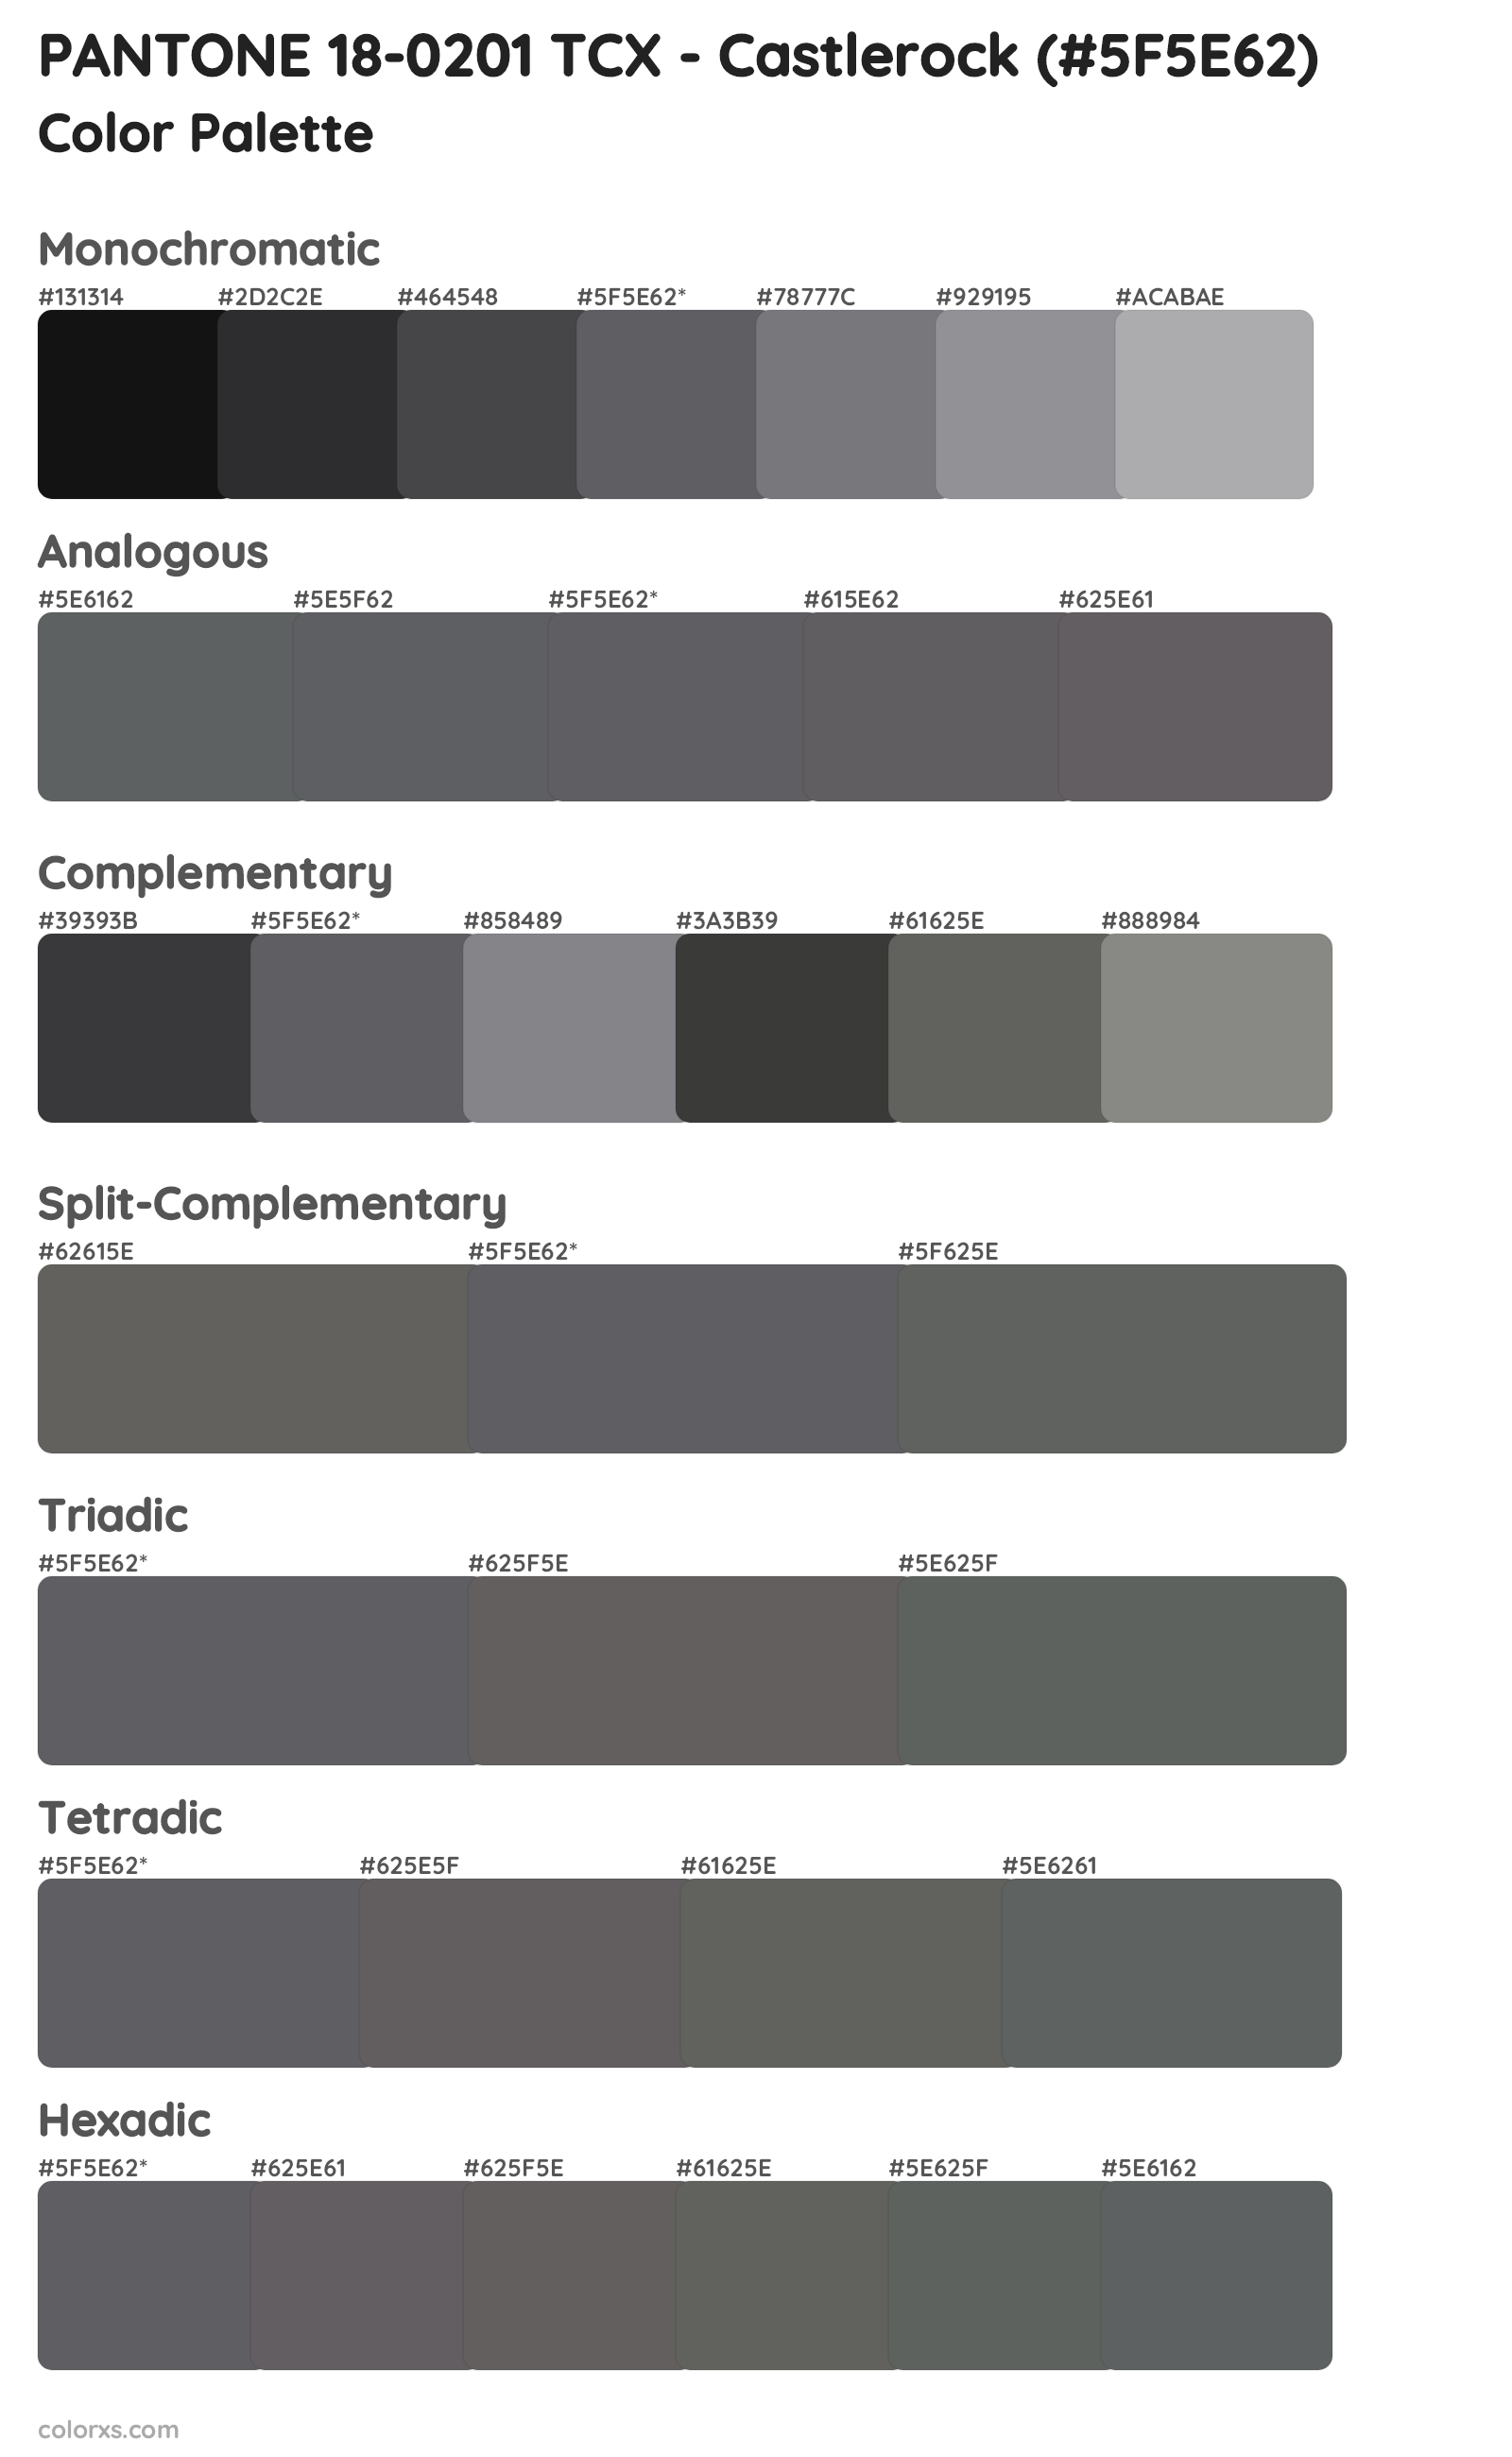 PANTONE 18-0201 TCX - Castlerock Color Scheme Palettes